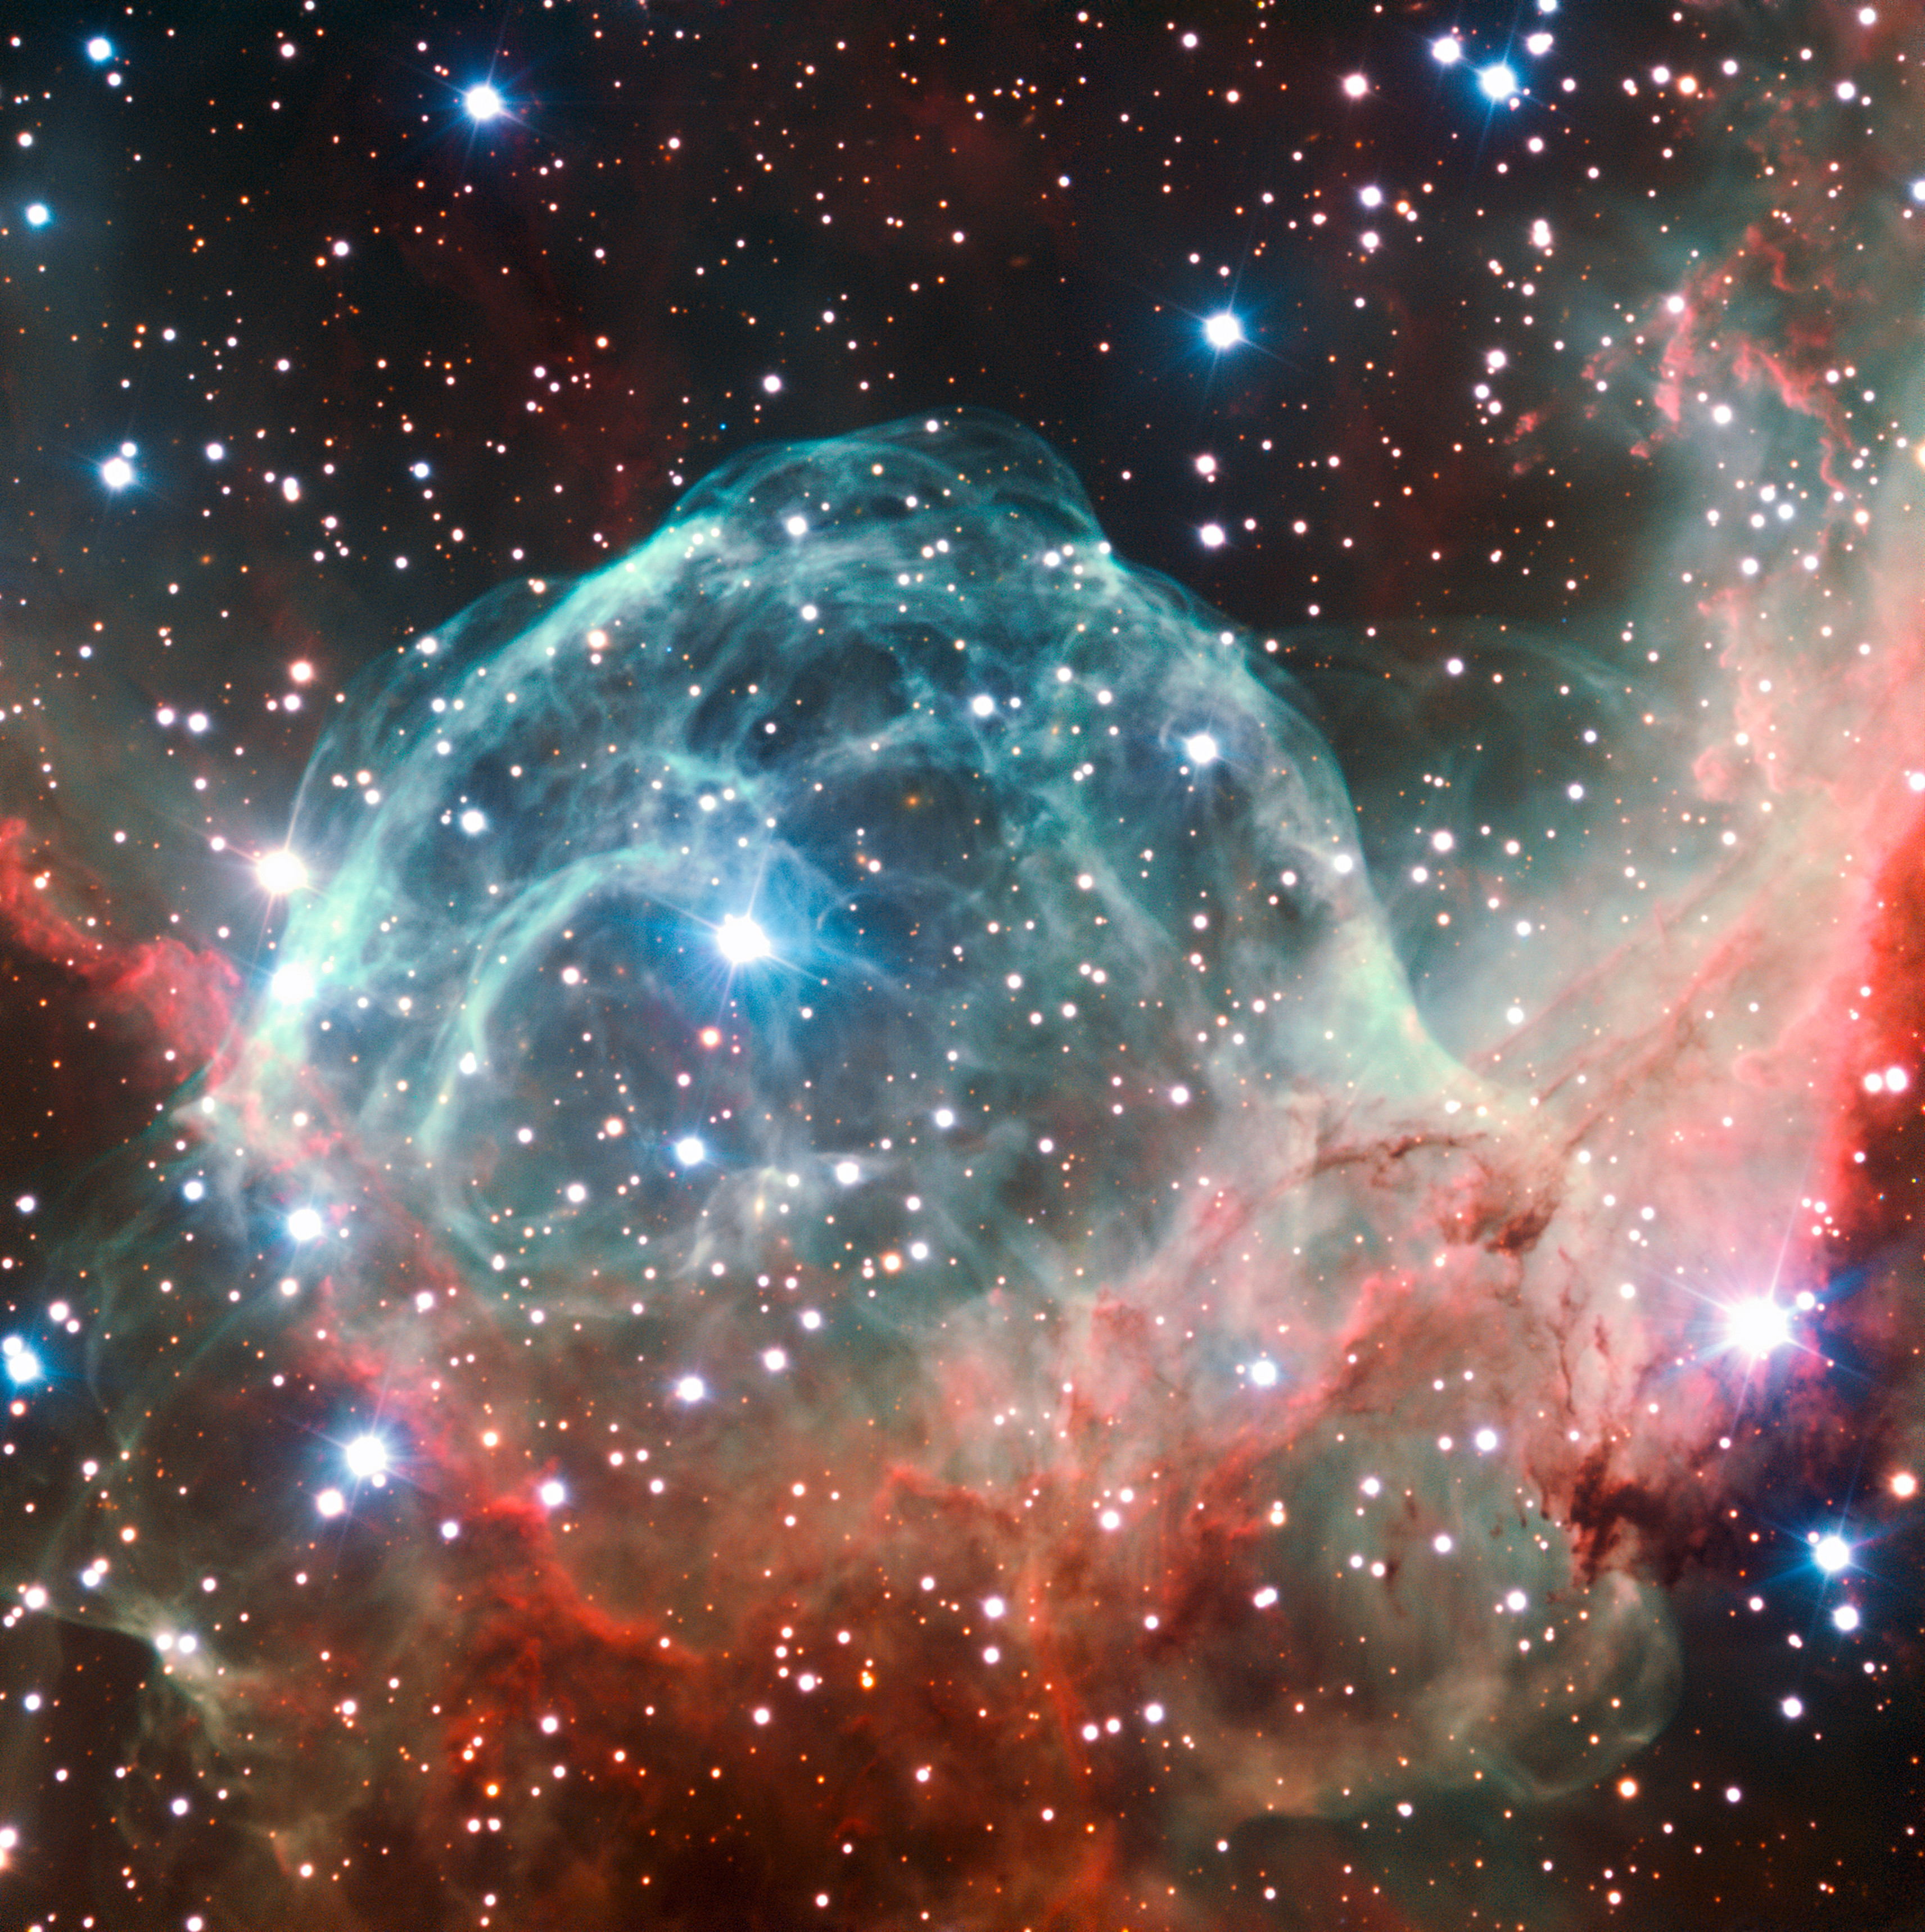 Image Archive: Nebulae | ESO